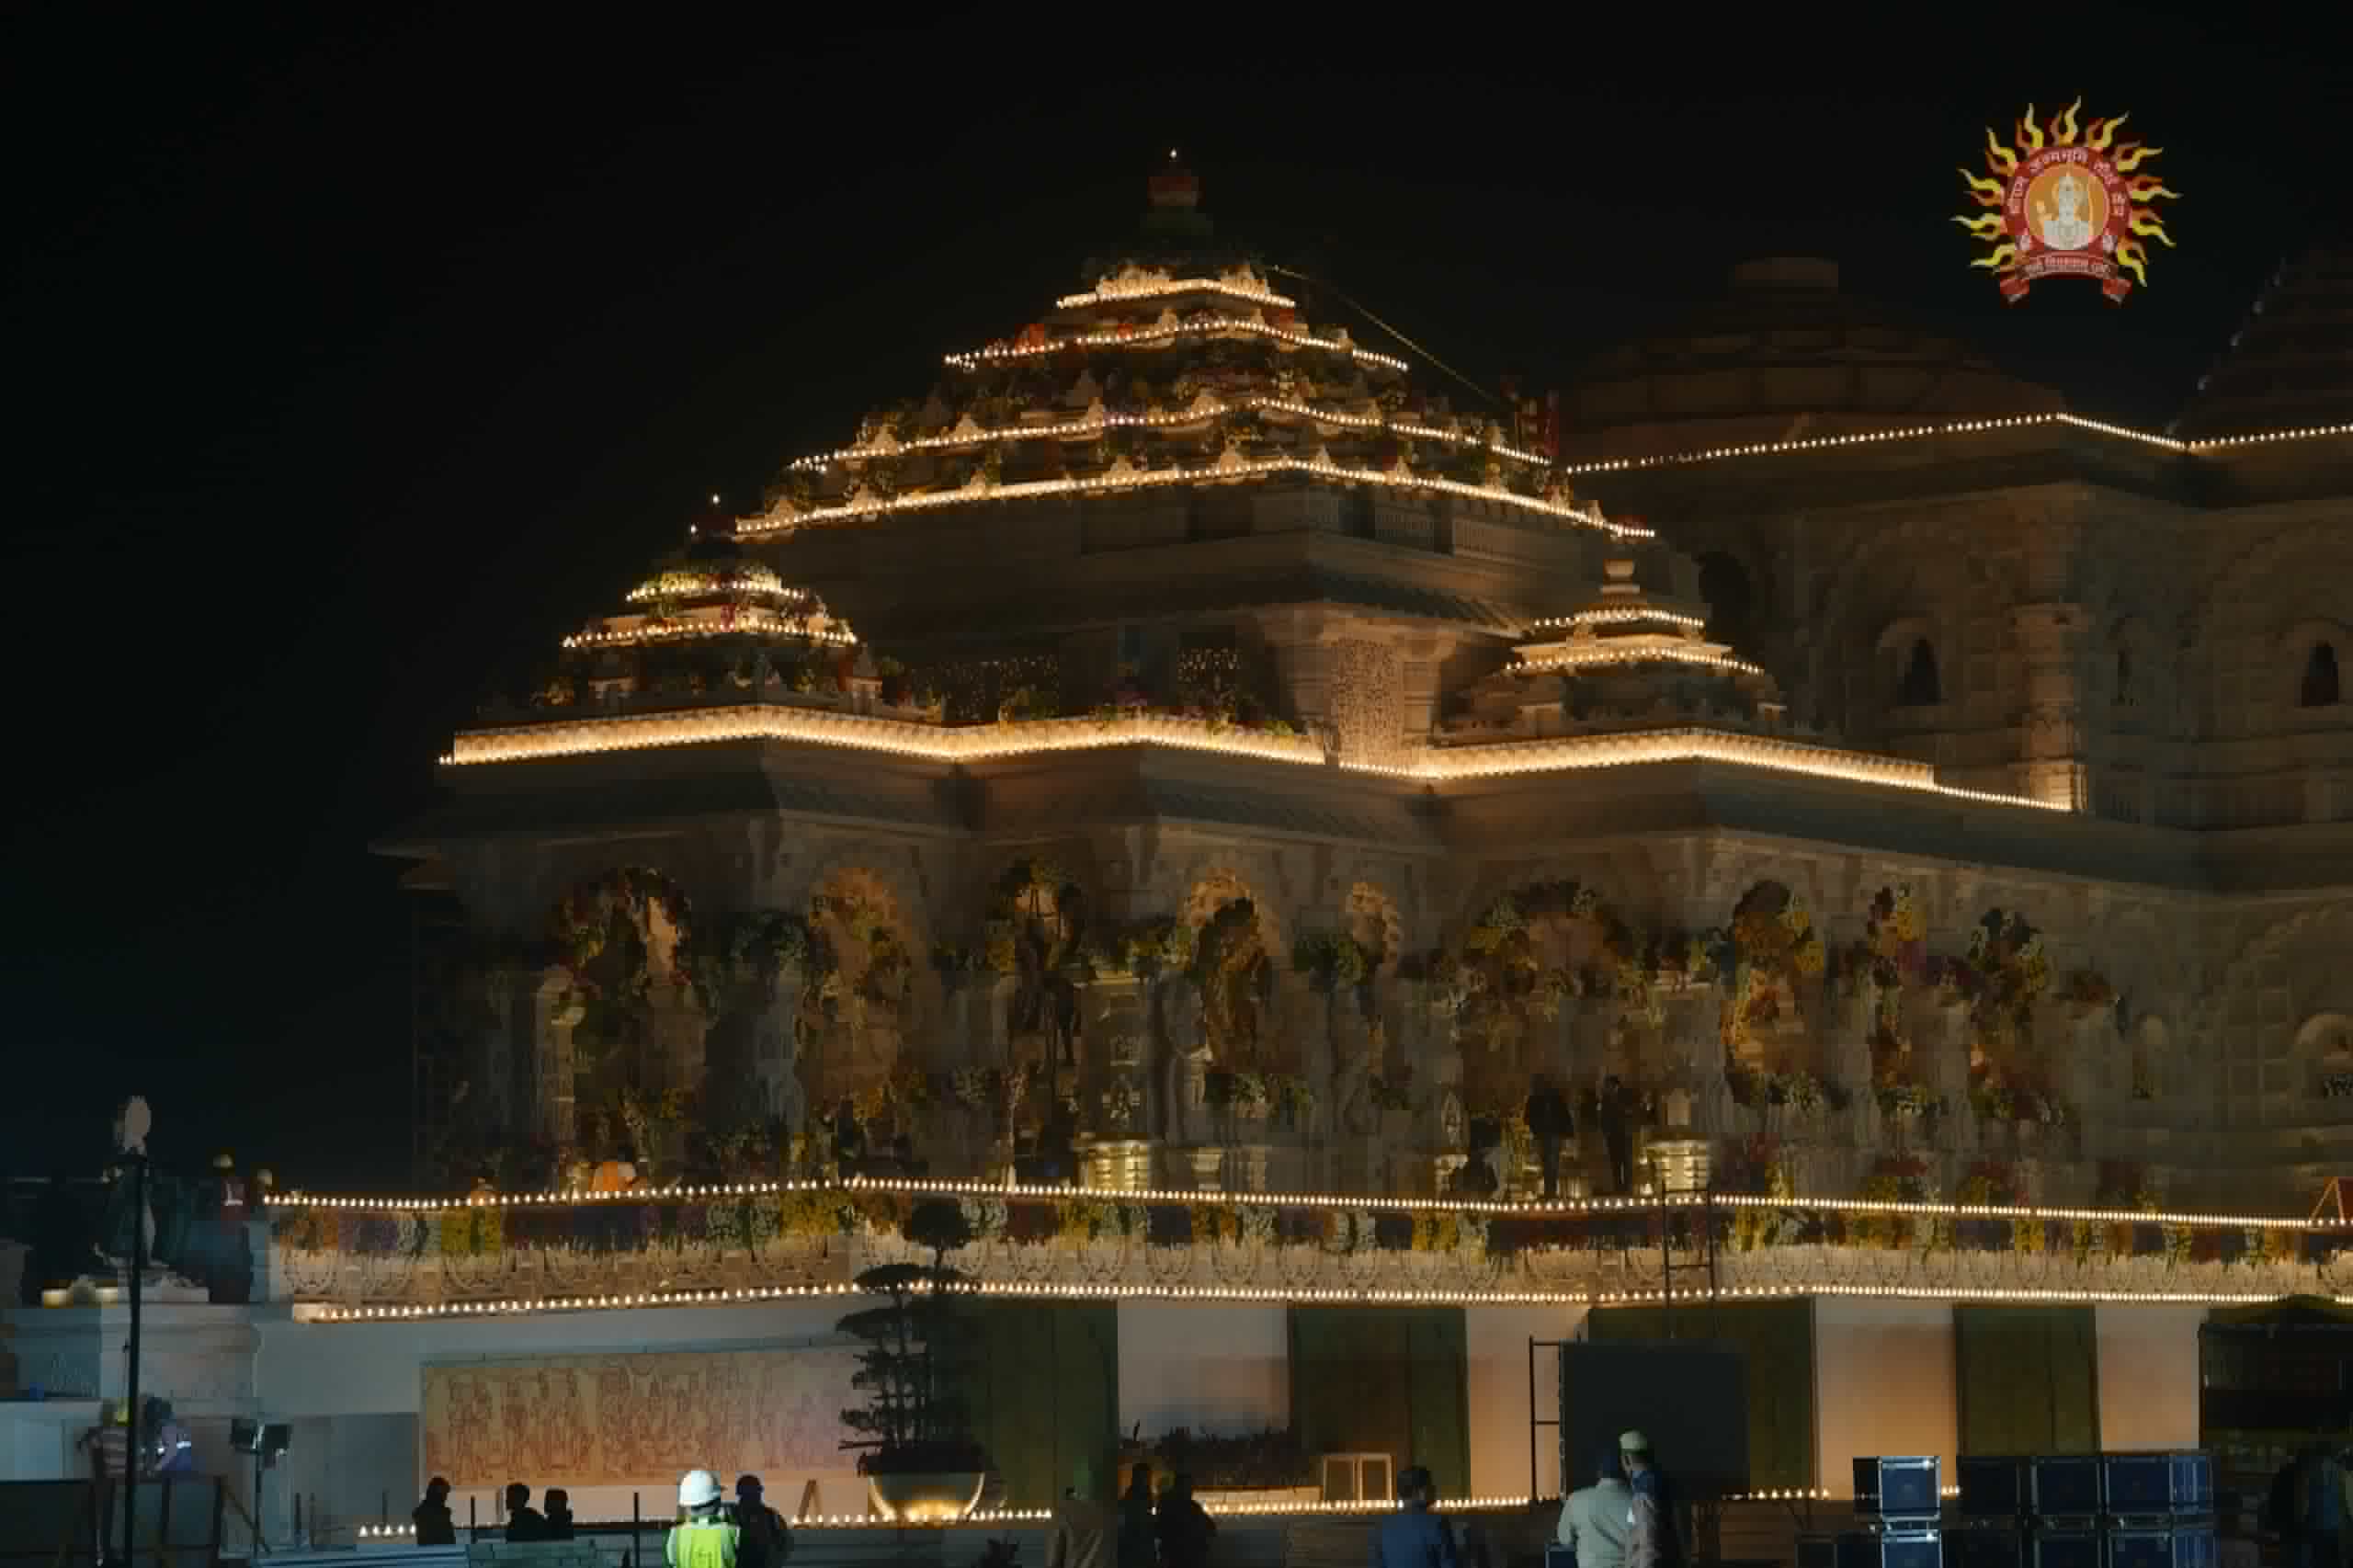 आज लोकसभा में ऐतिहासिक श्रीराम मंदिर निर्माण और श्रीरामलला की प्राण-प्रतिष्ठा पर चर्चा हो रही है।